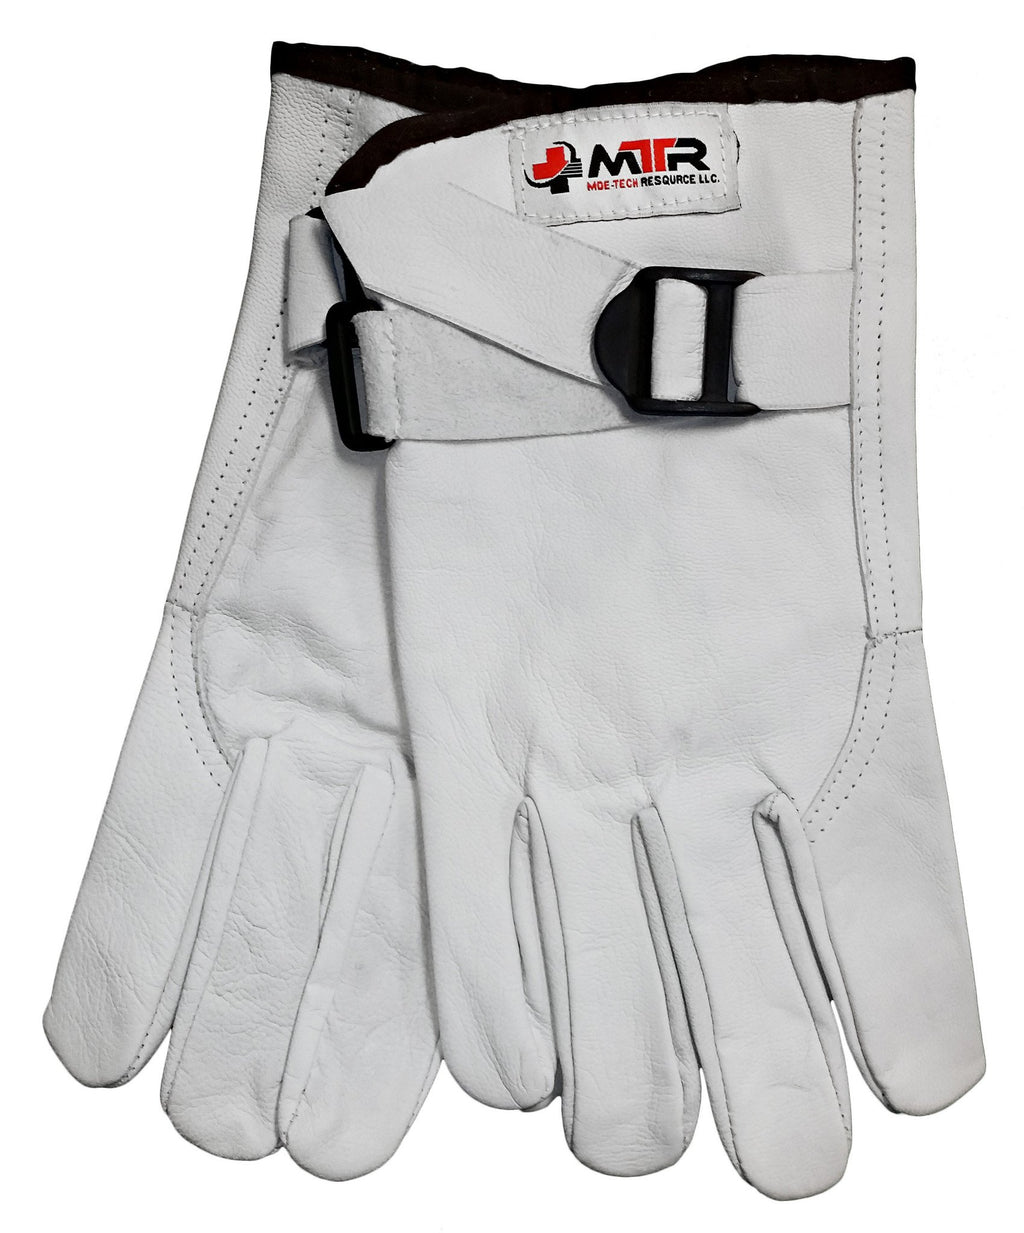 Wildland Firefighting Gloves - mtrsuperstore